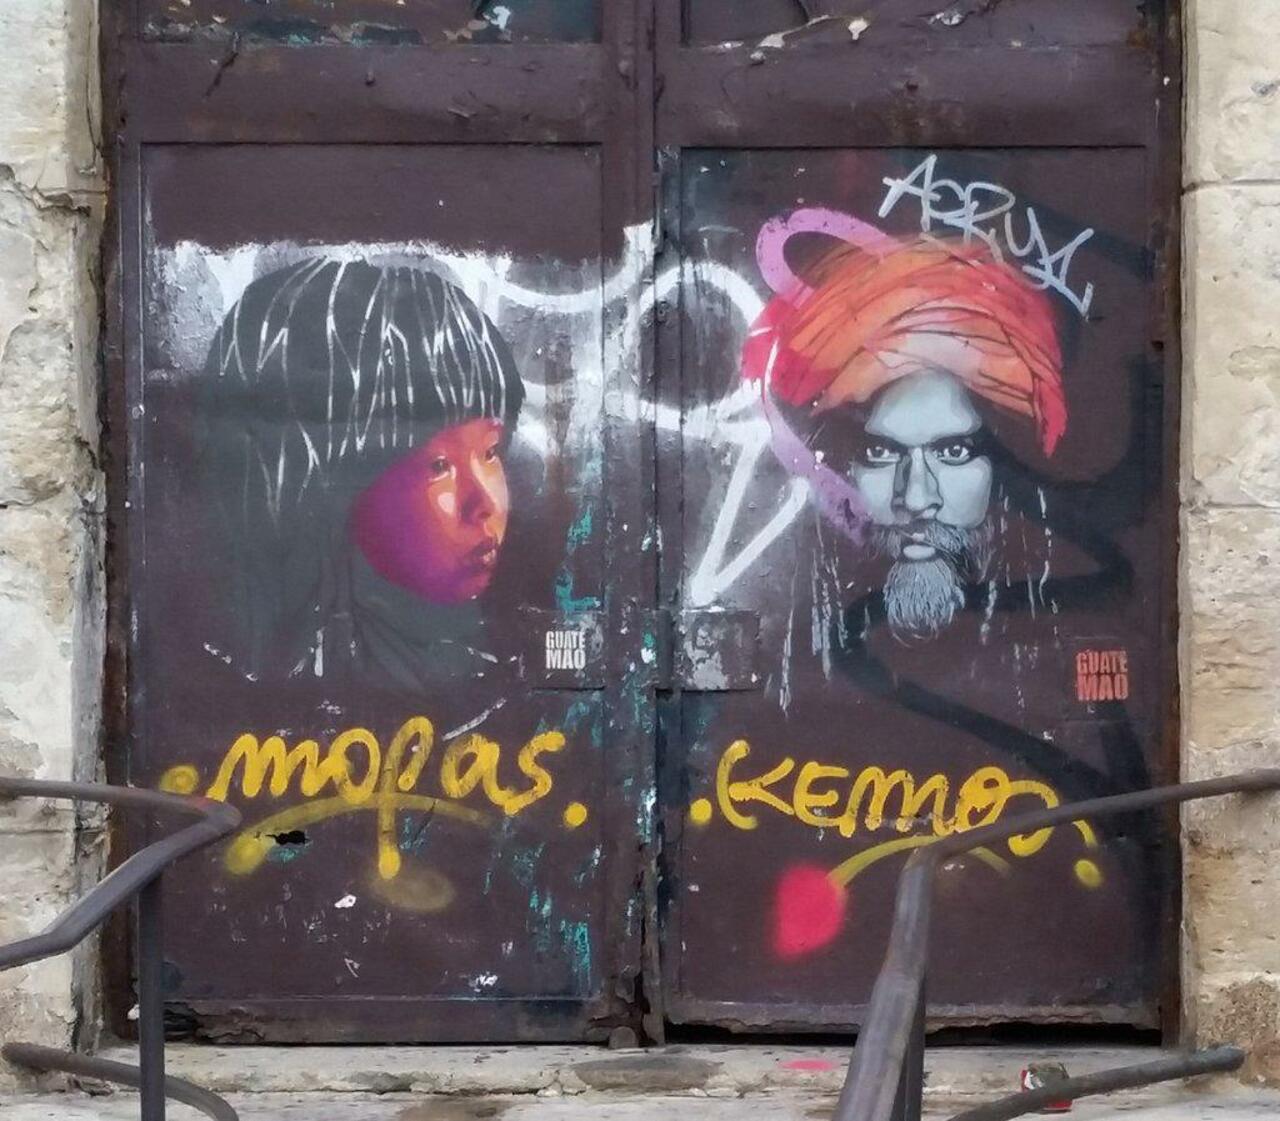 Le Paris que j'aime c'est aussi ça...
#streetart #graffiti #pochoir #Paris 
#10emearrondissement http://t.co/umA6Uj8hcO